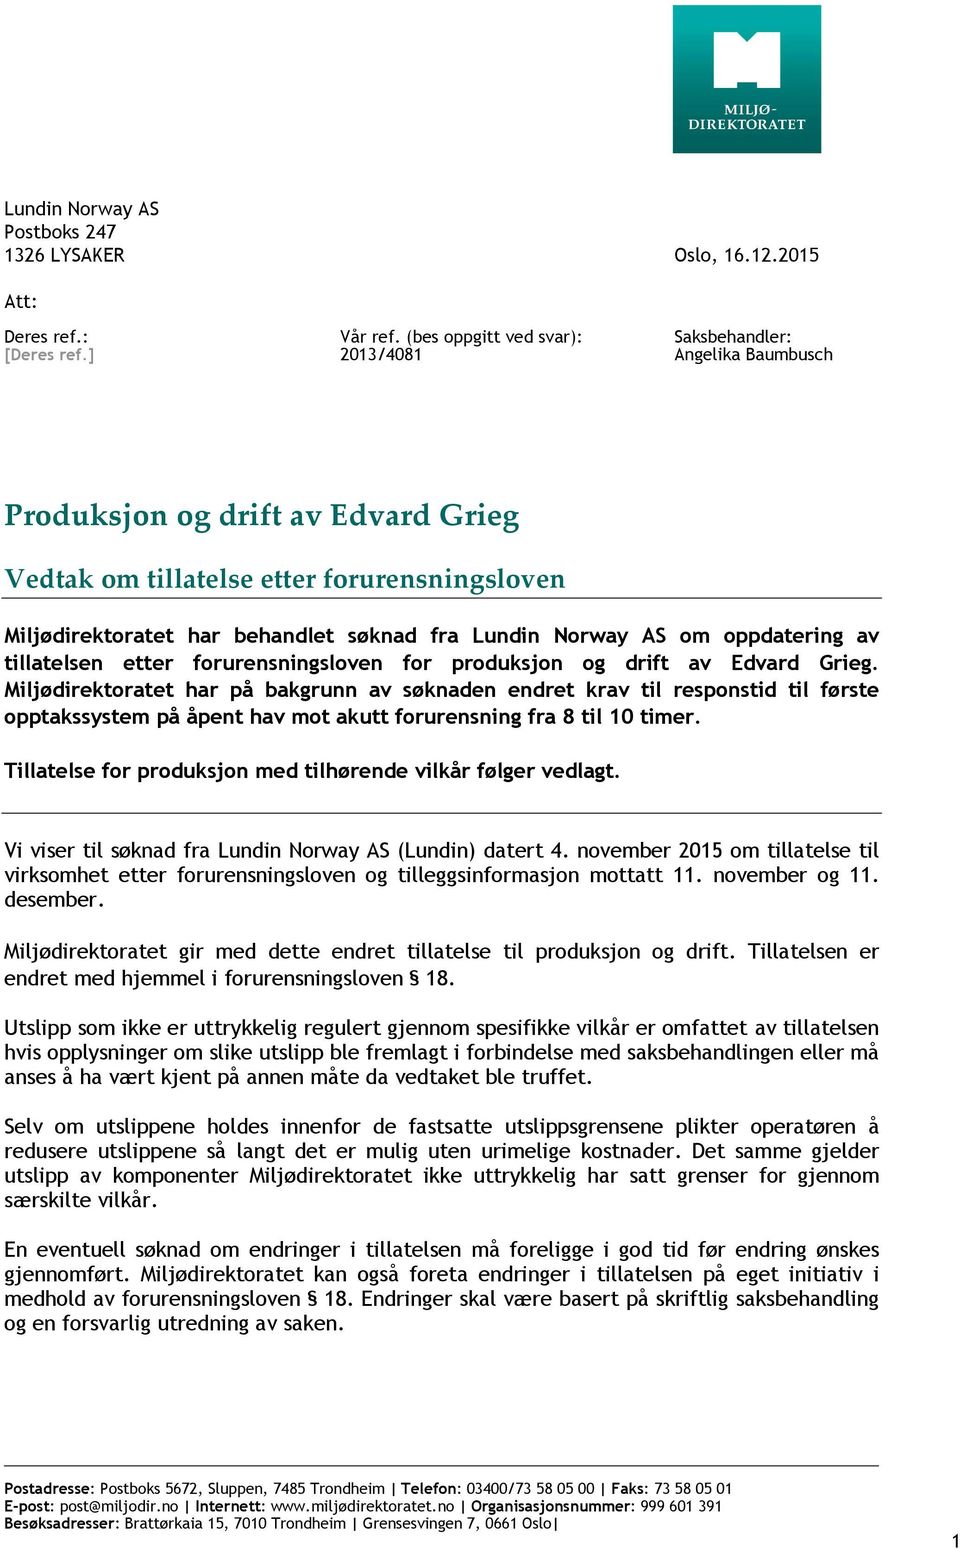 Norway AS om oppdatering av tillatelsen etter forurensningsloven for produksjon og drift av Edvard Grieg.